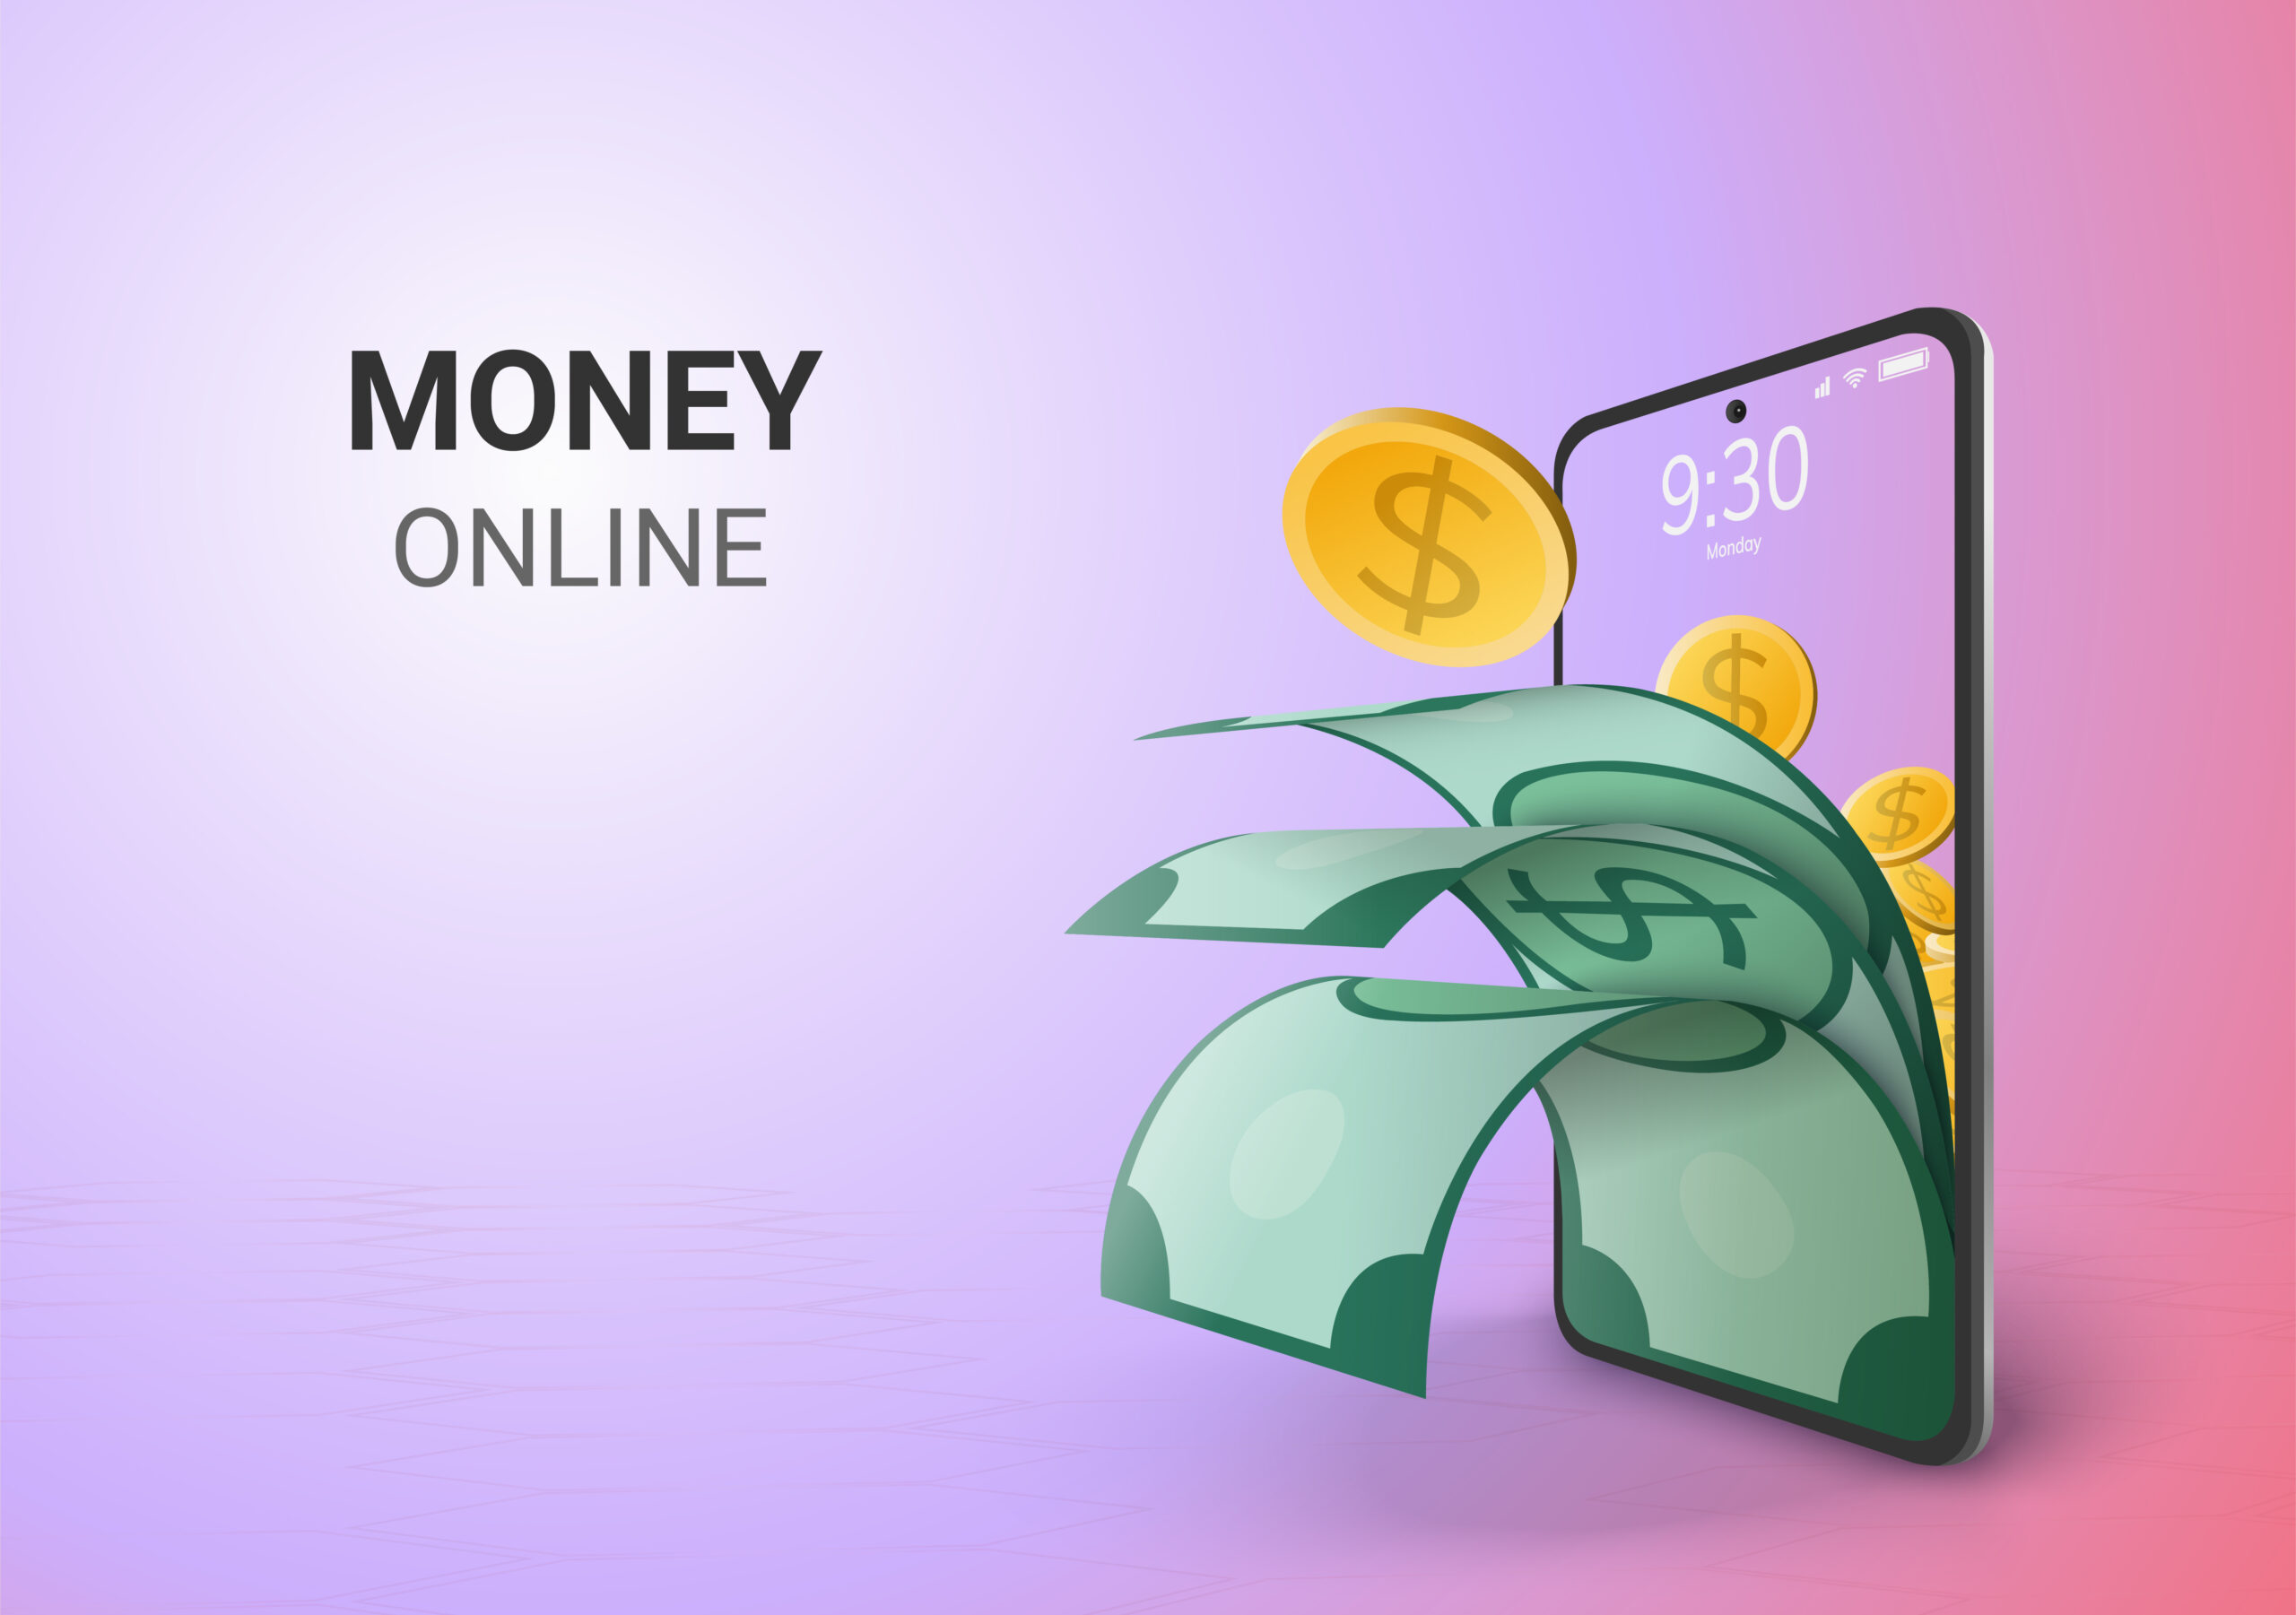 101 Websites To Earn Money Online